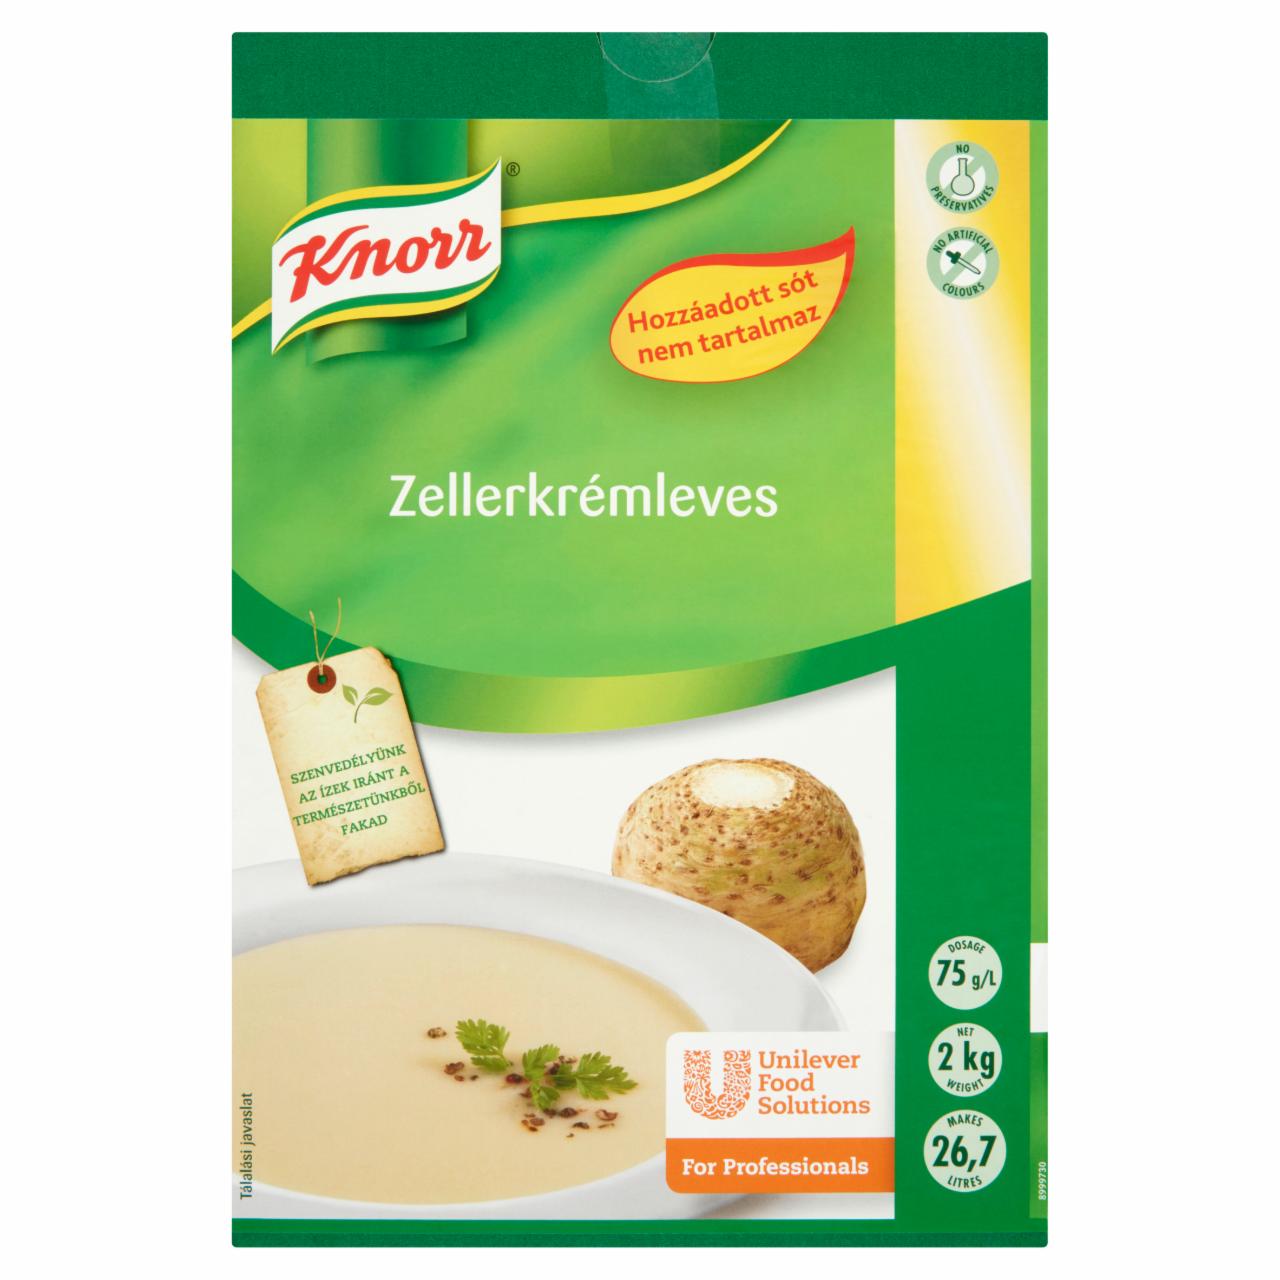 Képek - Knorr zellerkrémleves hozzáadott só nélkül 2 kg